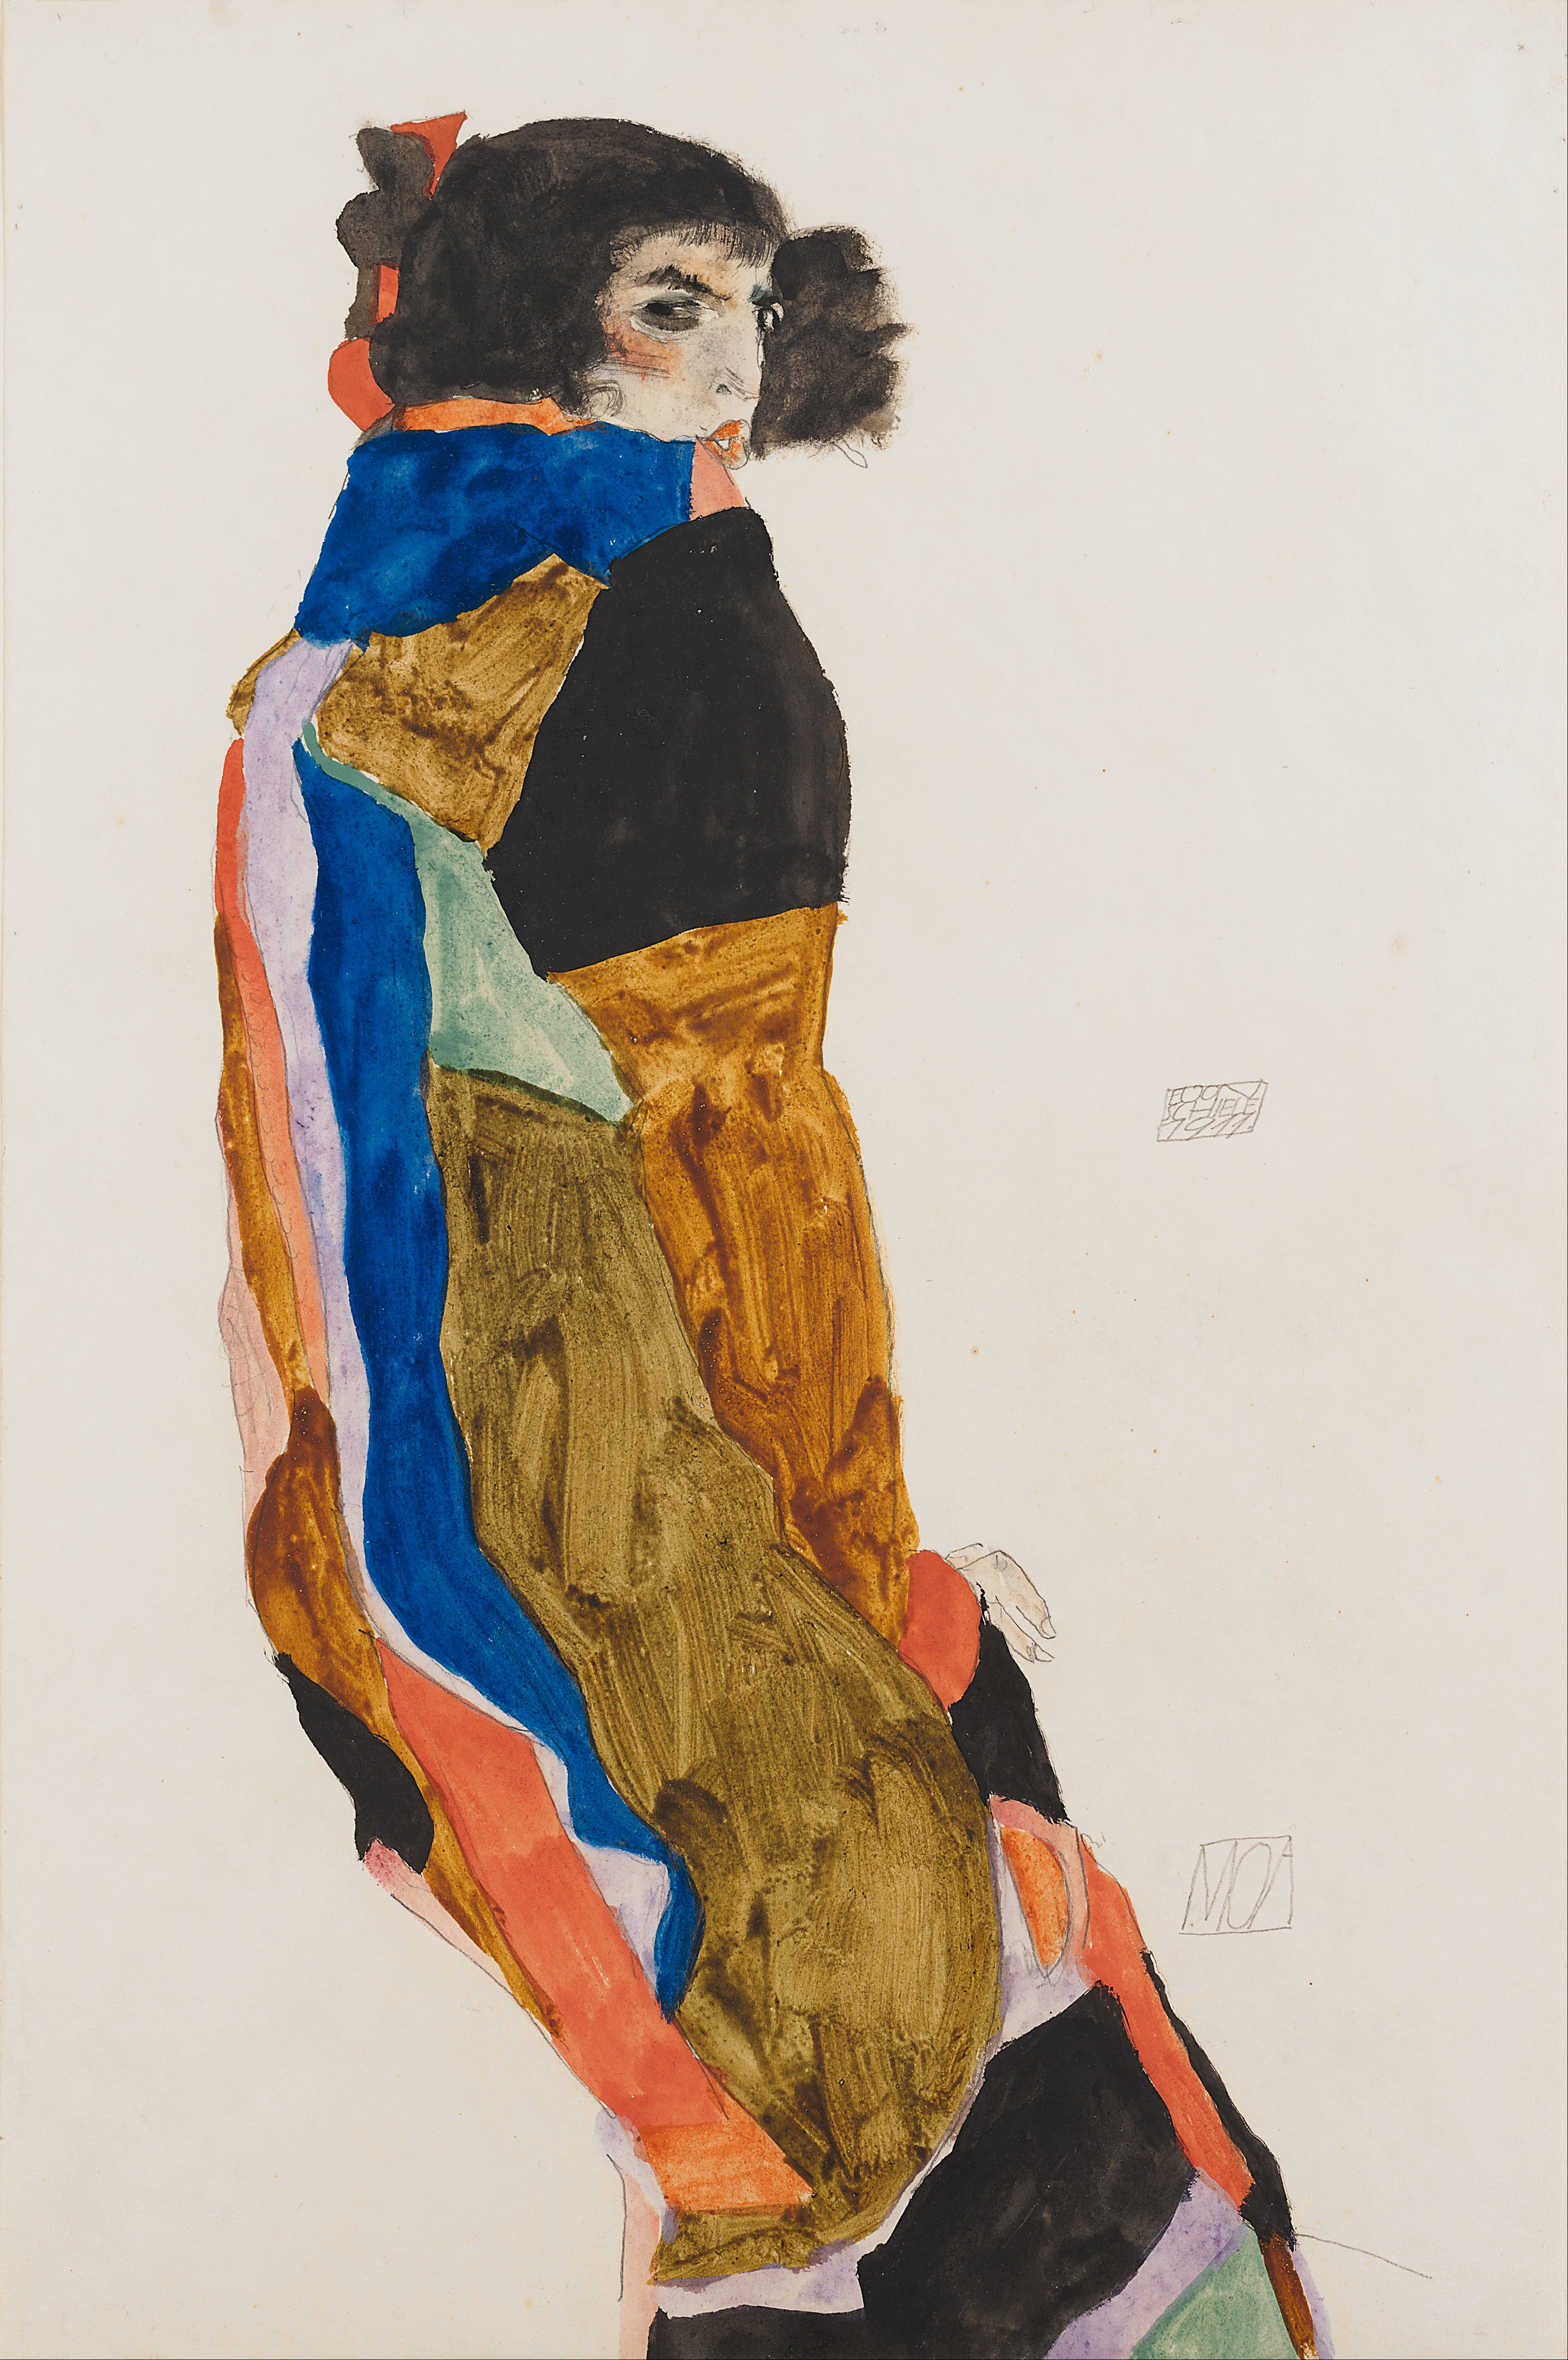 Moa by 埃贡 席勒 - 1911 - 31.5 x 47.8 cm 利奥波德博物馆